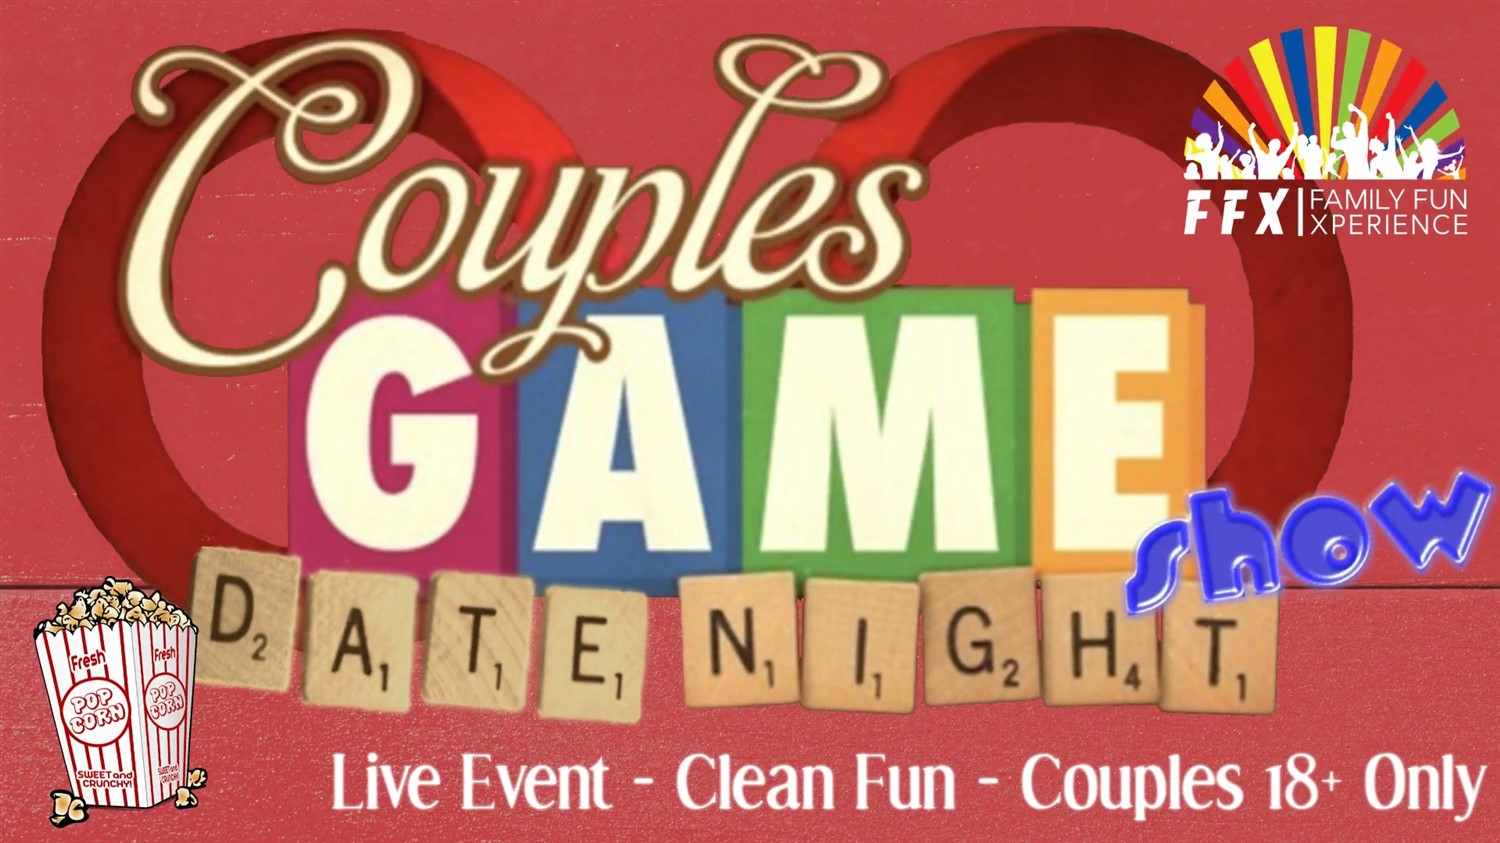 Couples Date Night Game Show! LIVE - Couples Only - FUN! on avr. 26, 19:00@FFX Theatre - Choisissez un siège,Achetez des billets et obtenez des informations surFamily Fun Xperience tickets.ffxshow.org